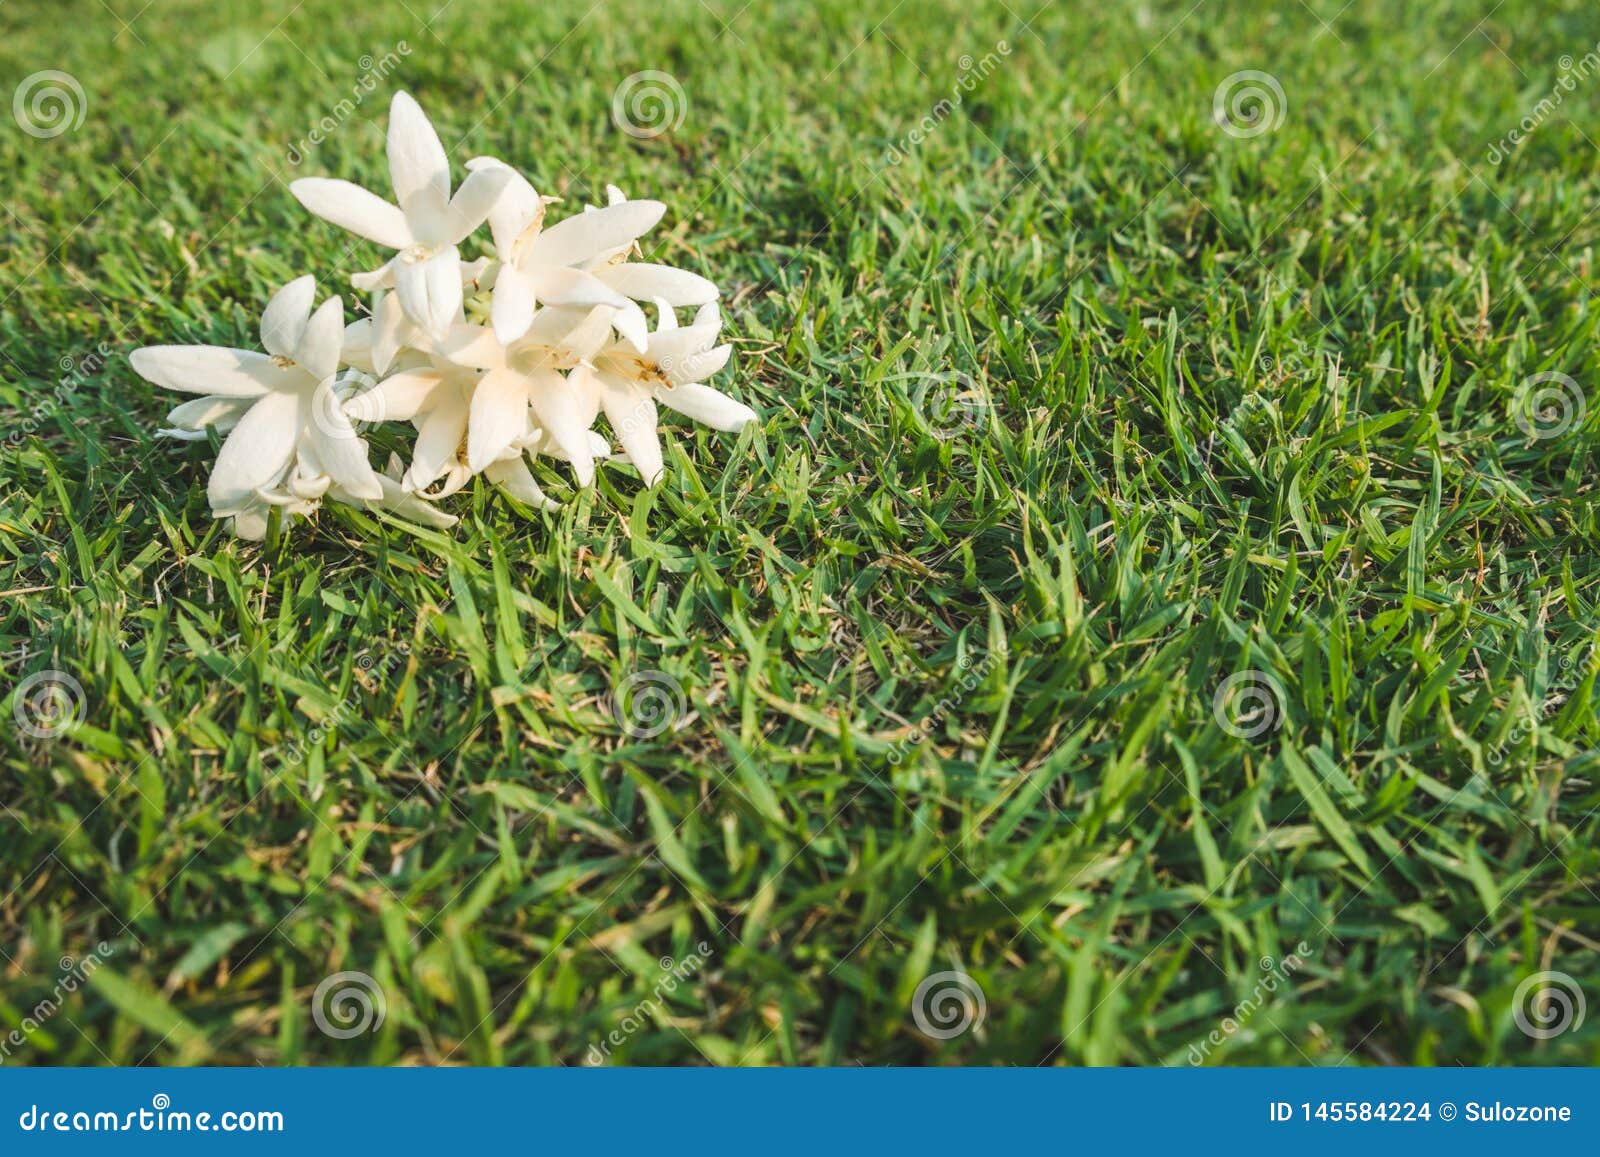 Fleurs Blanches De Hortensis De Millingtonia Sur La Pelouse Photo stock -  Image du environnement, bangkok: 145584224